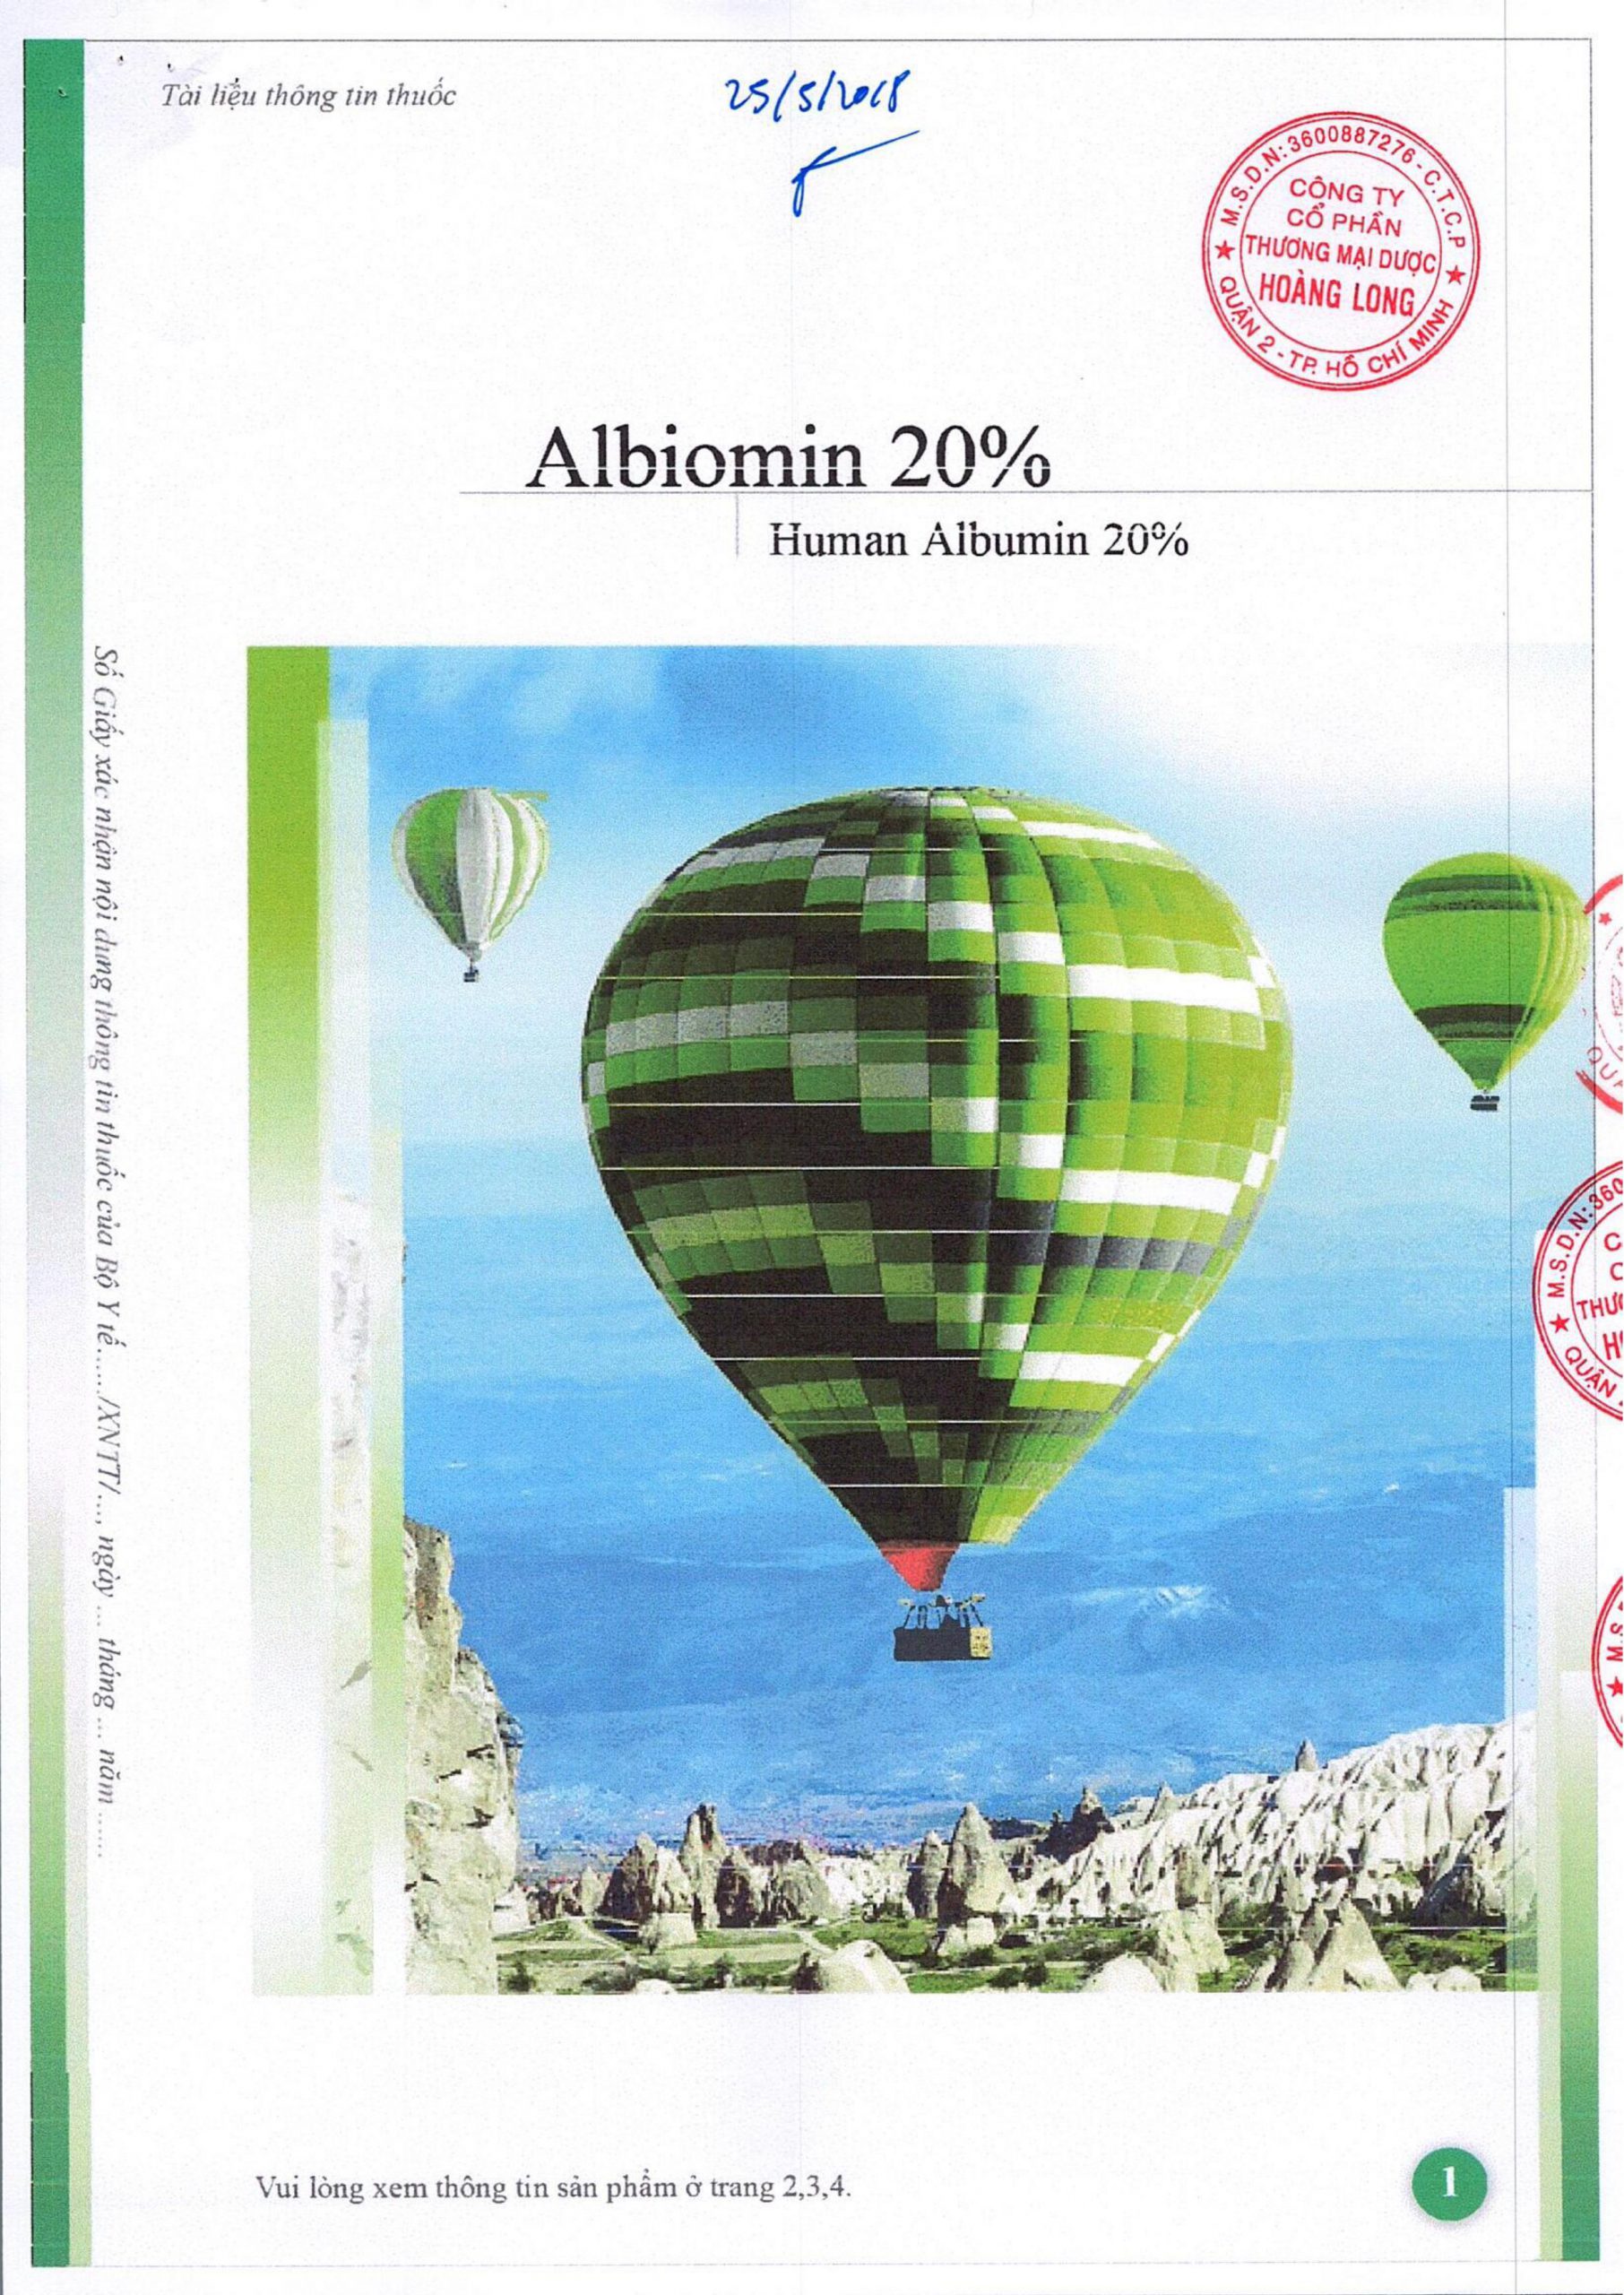 Hướng dẫn sử dụng Albiomin 20%